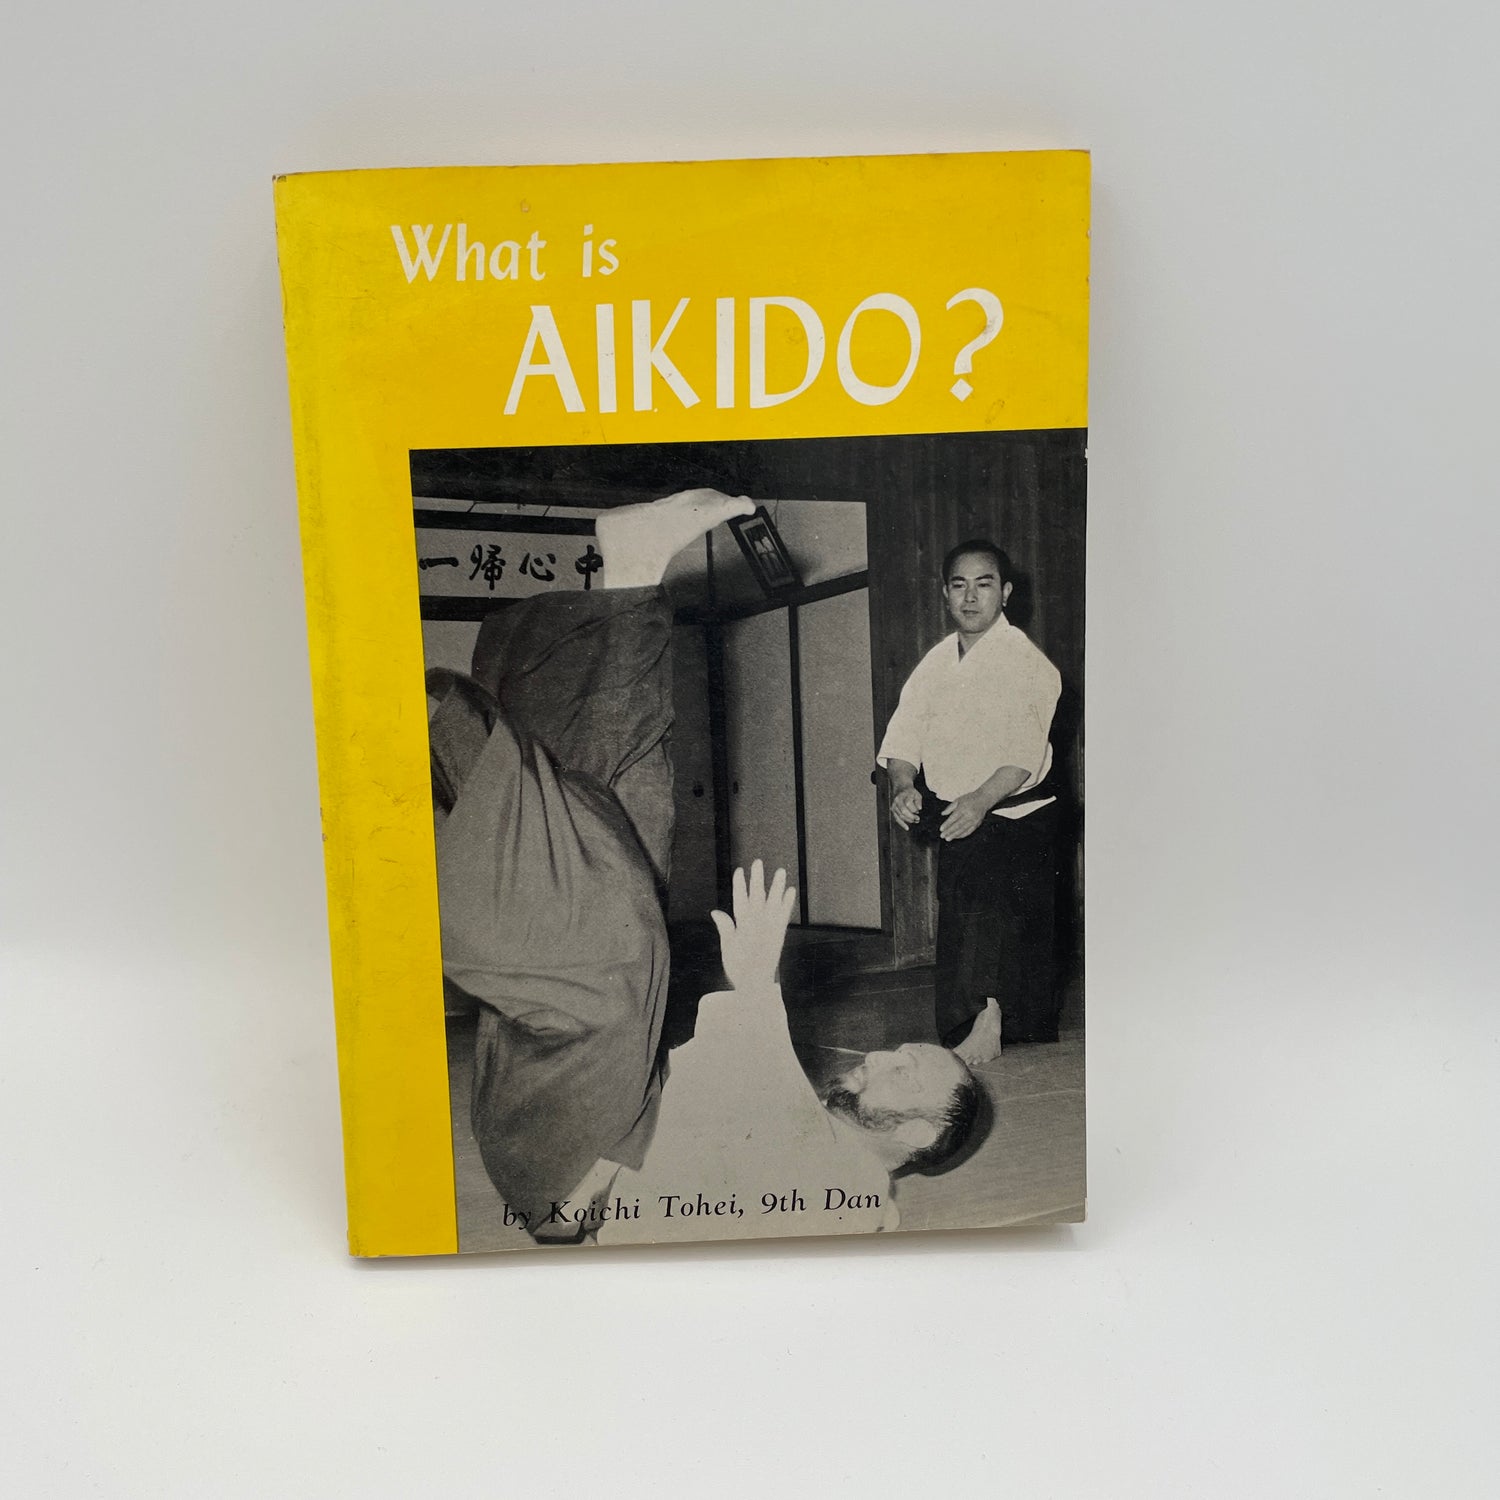 Qué es el libro de Aikido de Koichi Tohei (usado)